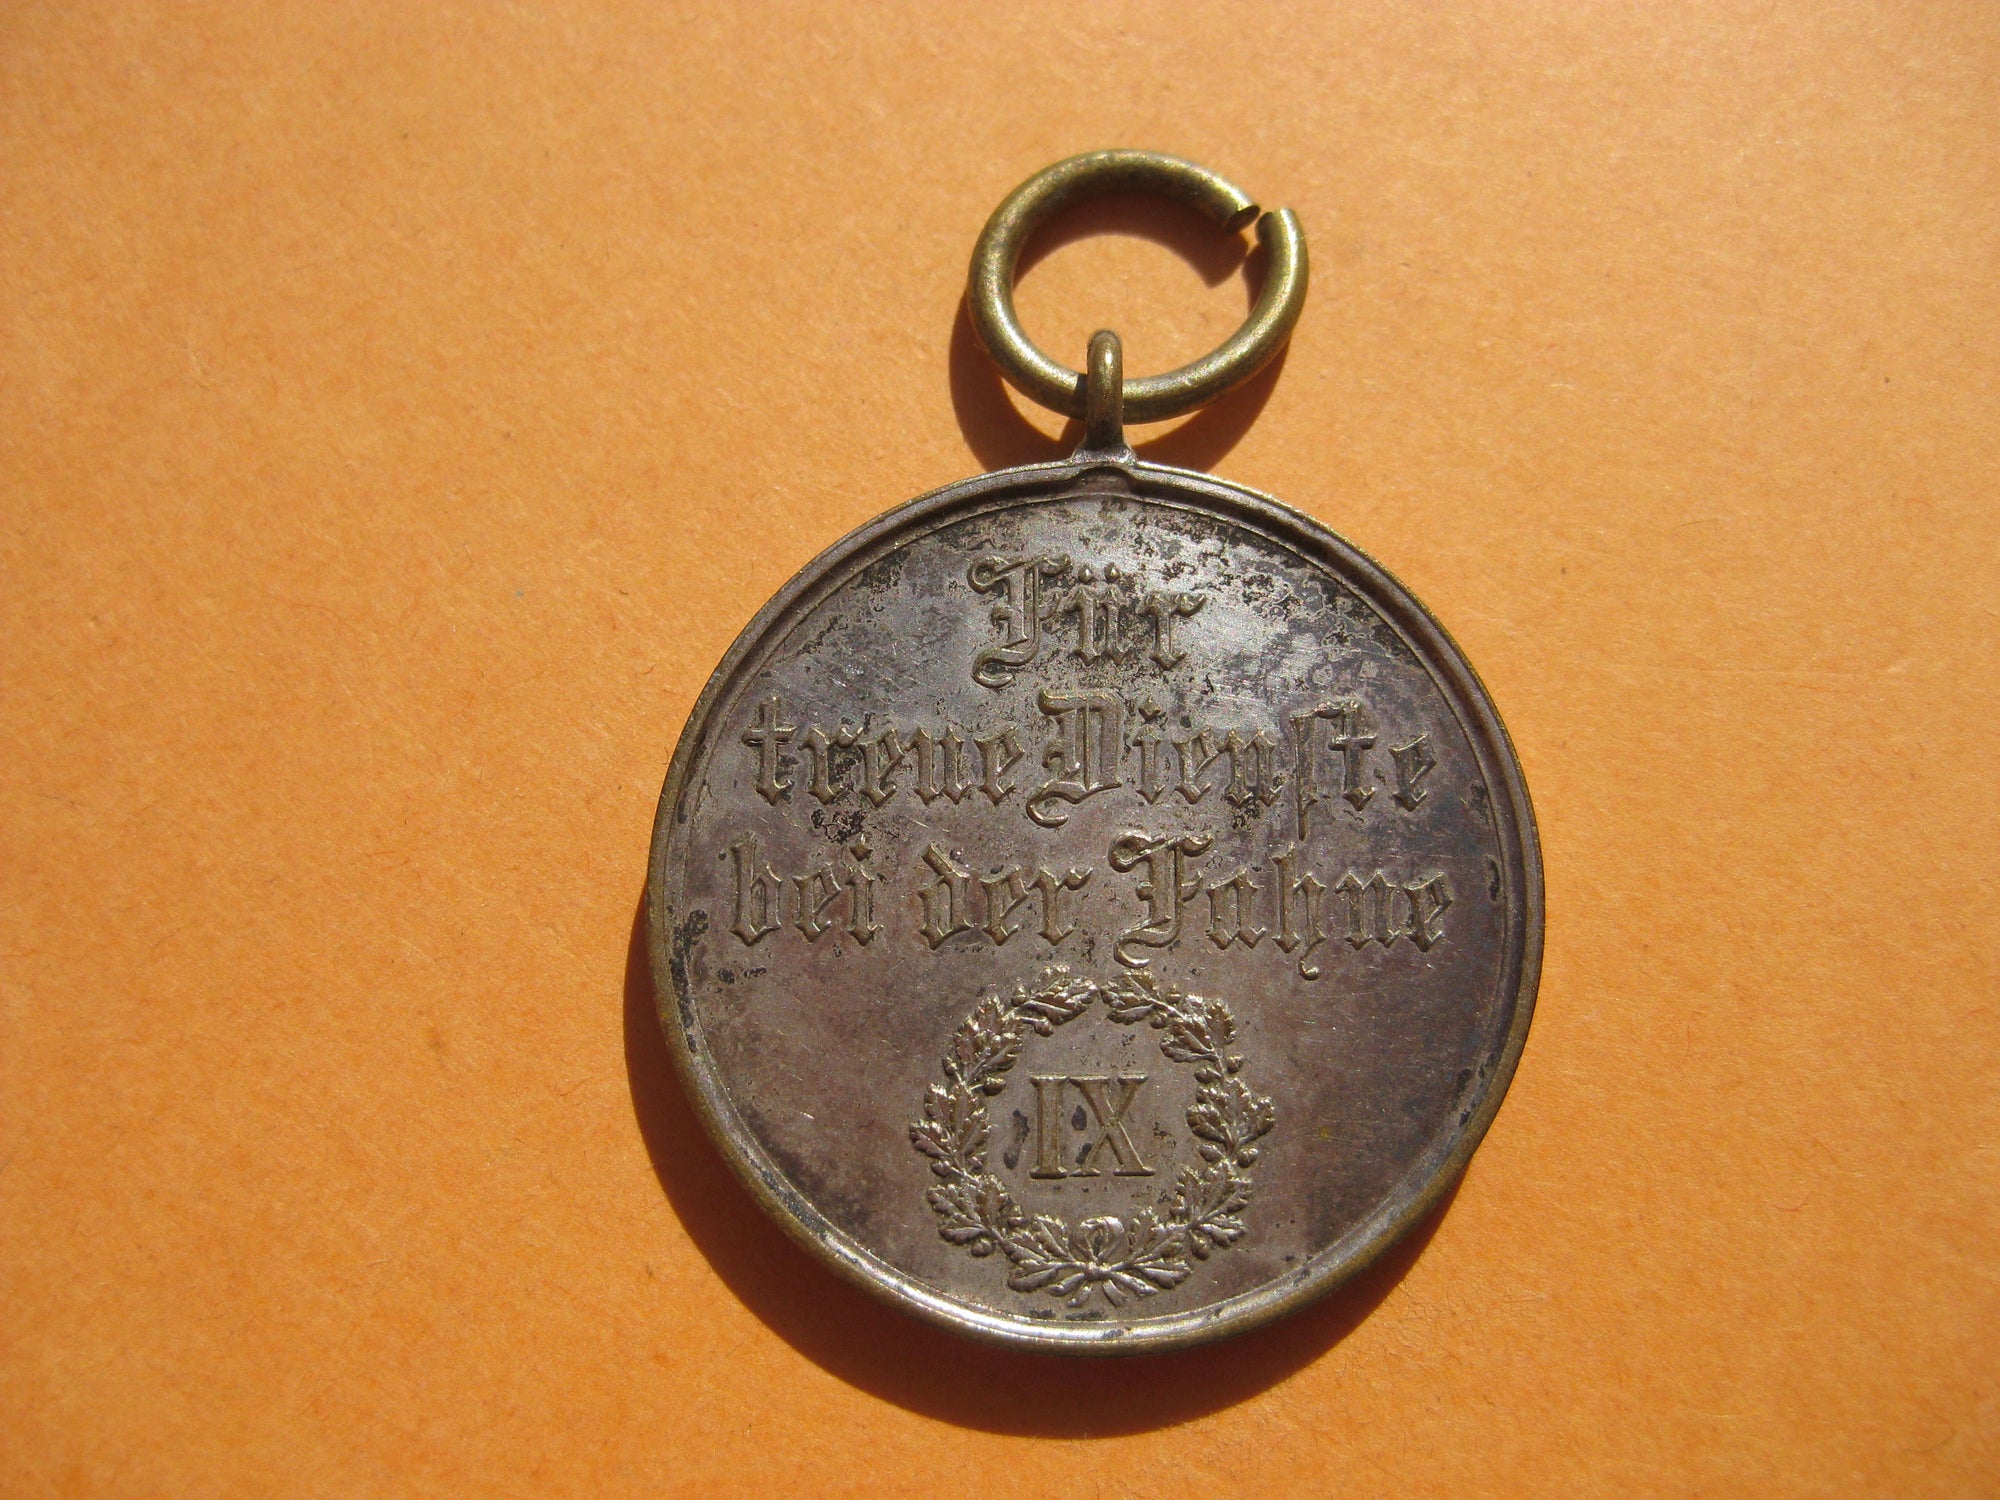 Württemberg Dienstauszeichnung 3.Klasse für 9 Jahre Medaille 1913 - 1917